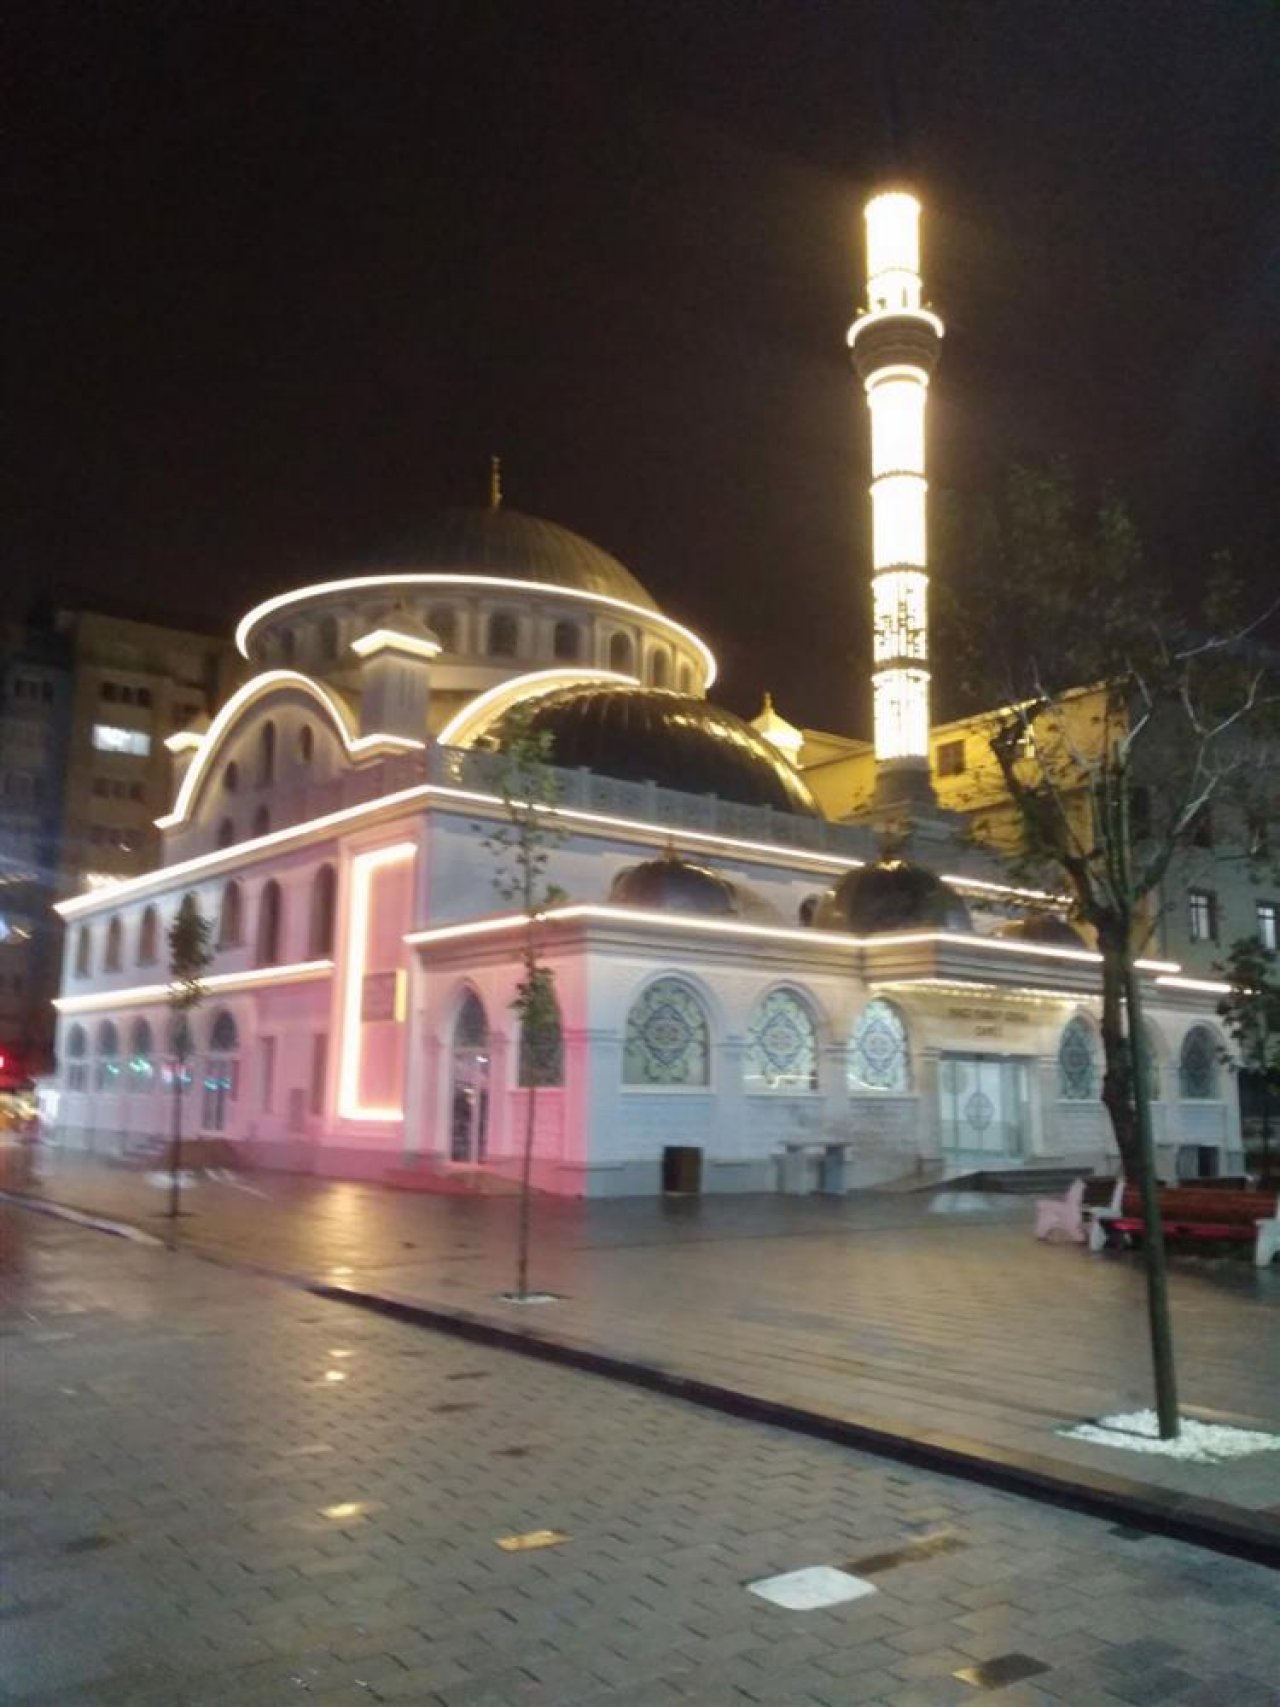 Taşdelen Hacı Yusuf Cebir Camii